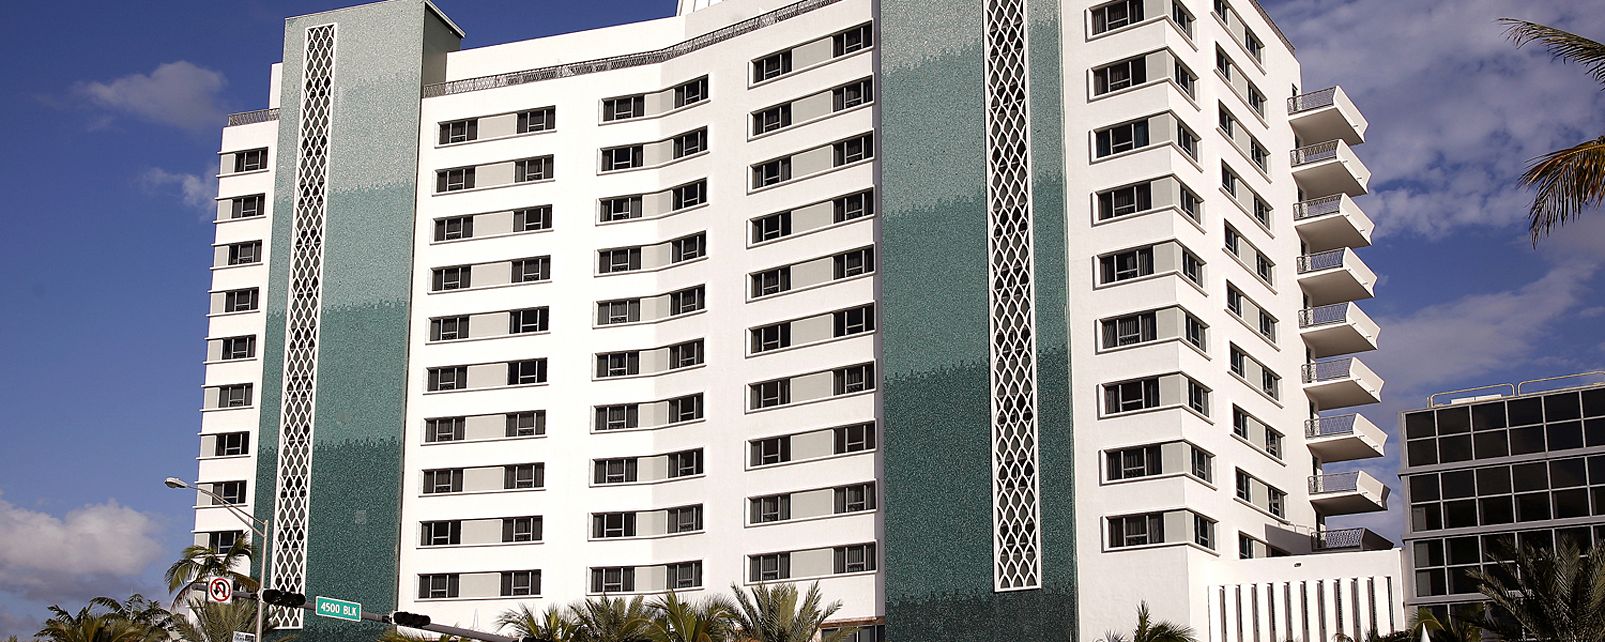 Hotel Eden Roc Miami Beach A Renaissance Resort Spa